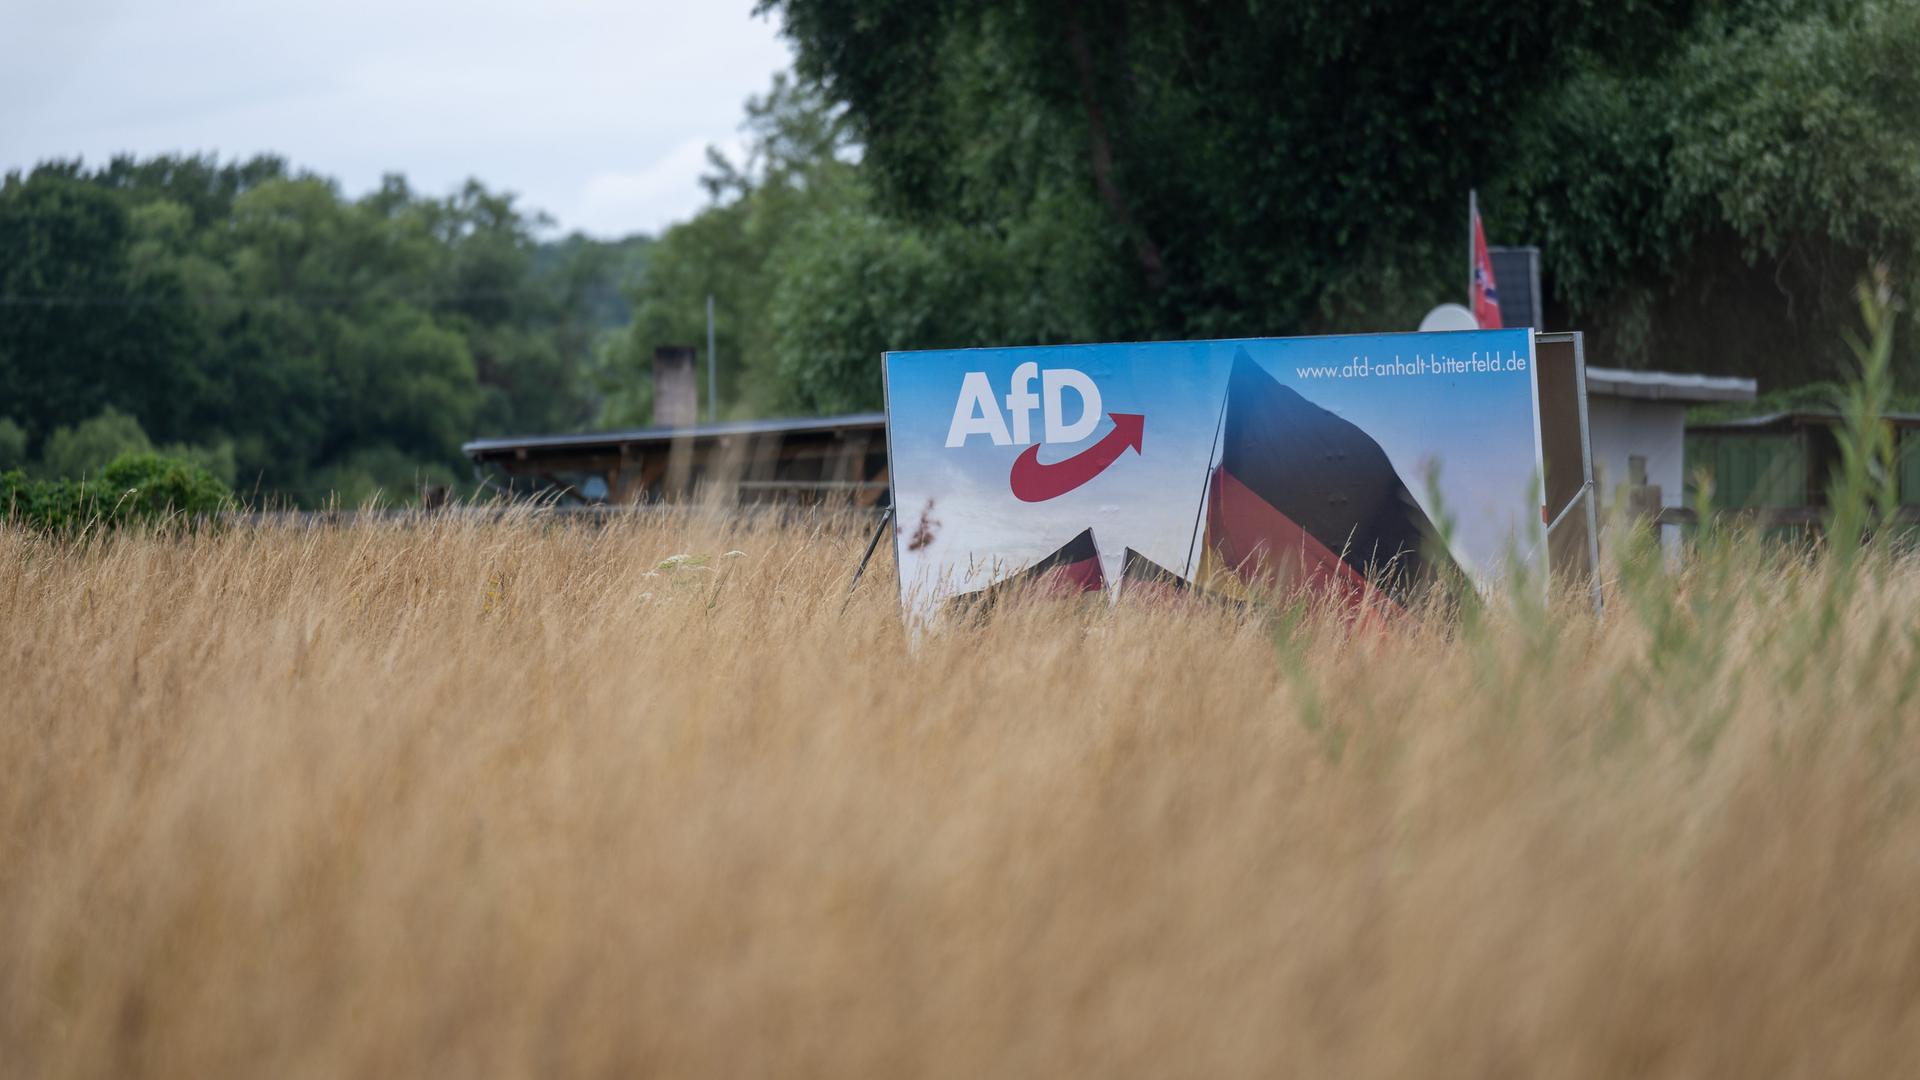 Ein Wahlplakat der AfD steht in einer Wiese bei Bitterfeld. Am 24. September wird in der Stadt Bitterfeld-Wolfen ein neuer Oberbürgermeister gewählt. Die AfD schickt einen eigenen Kandidaten ins Rennen.